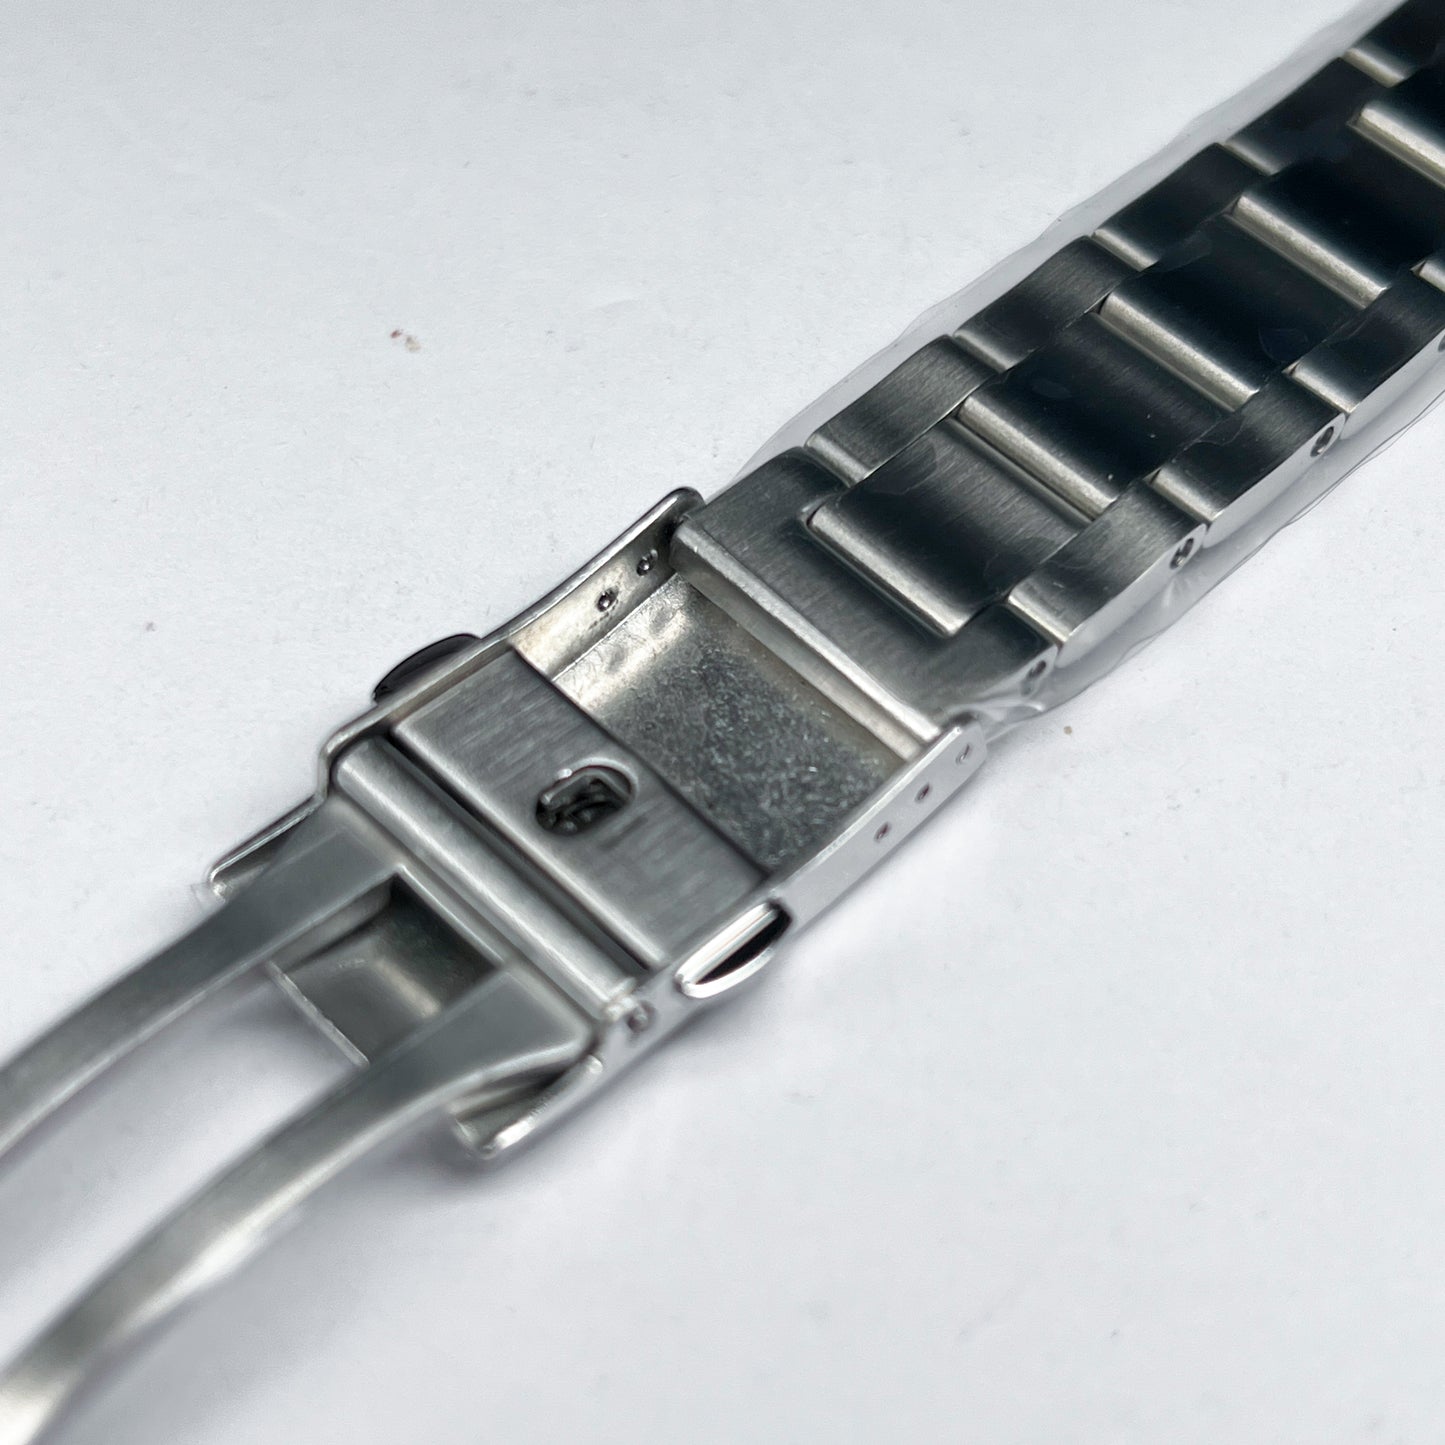 62MAS Oyster: Silver Brushed Bracelet [Female Endlinks]